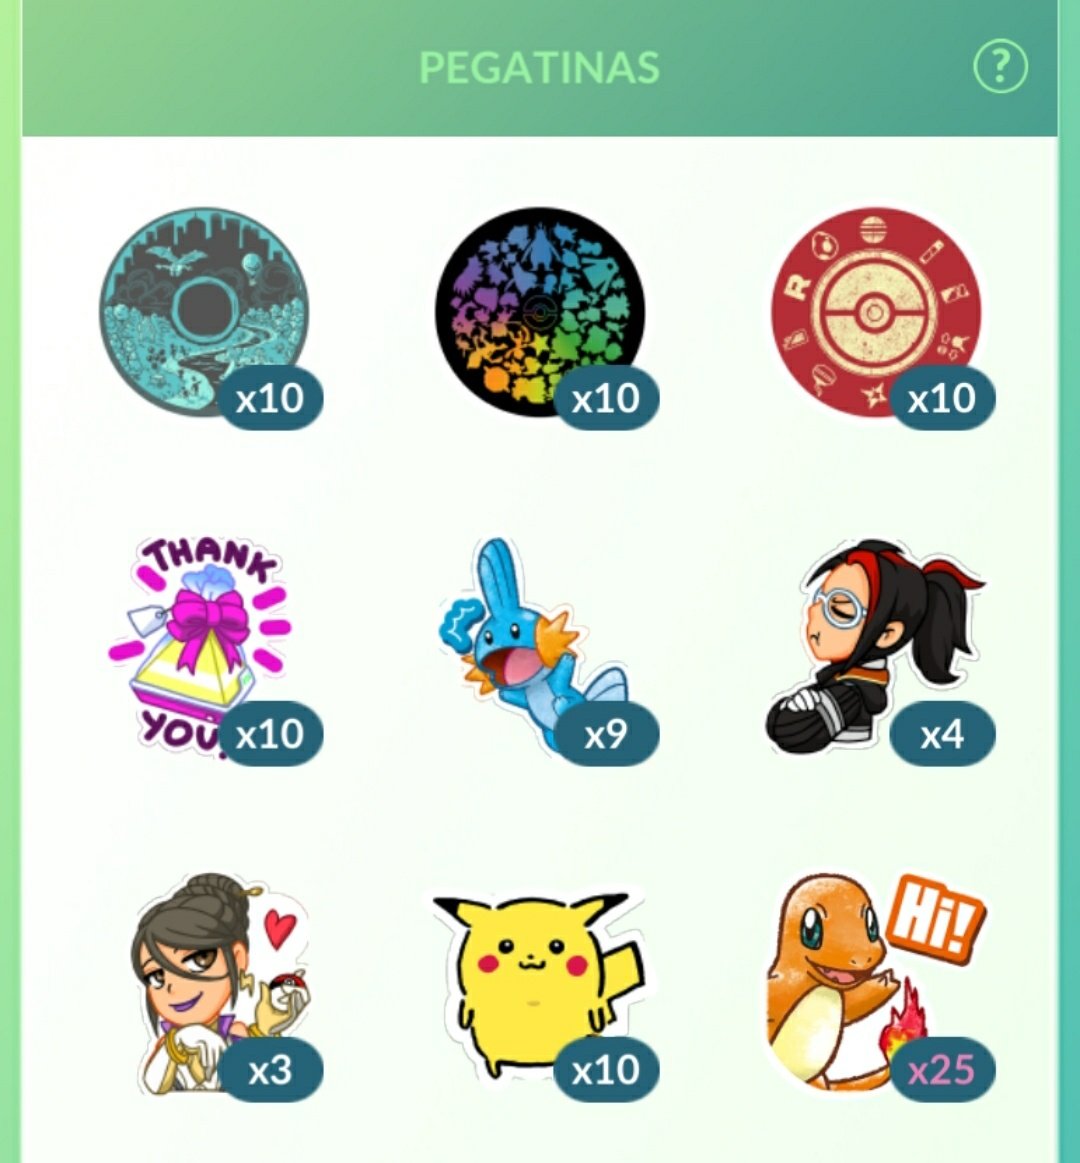 PokéXperto on X: Ya puedes ver tu colección de Pegatinas de Pokémon GO  desde tu Mochila  / X